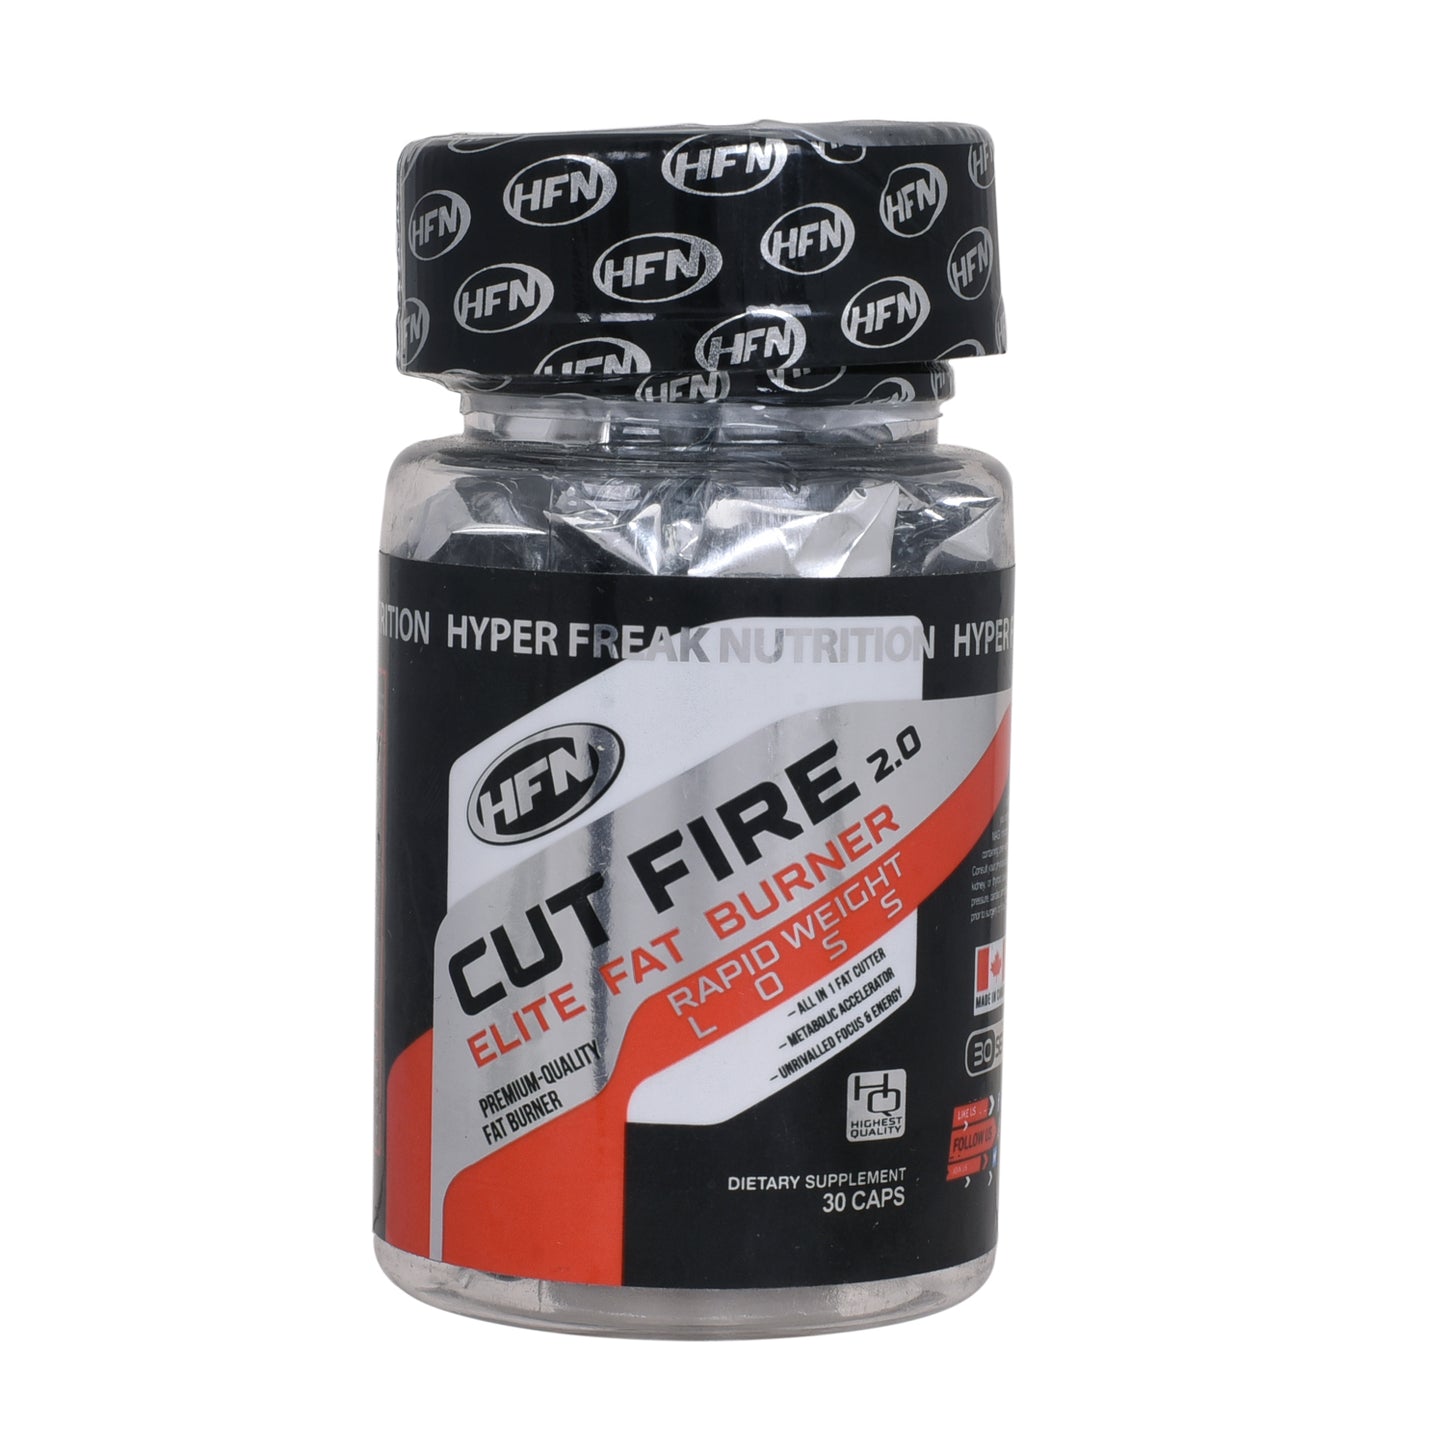 HFN Cut Fire 30 capsules pack